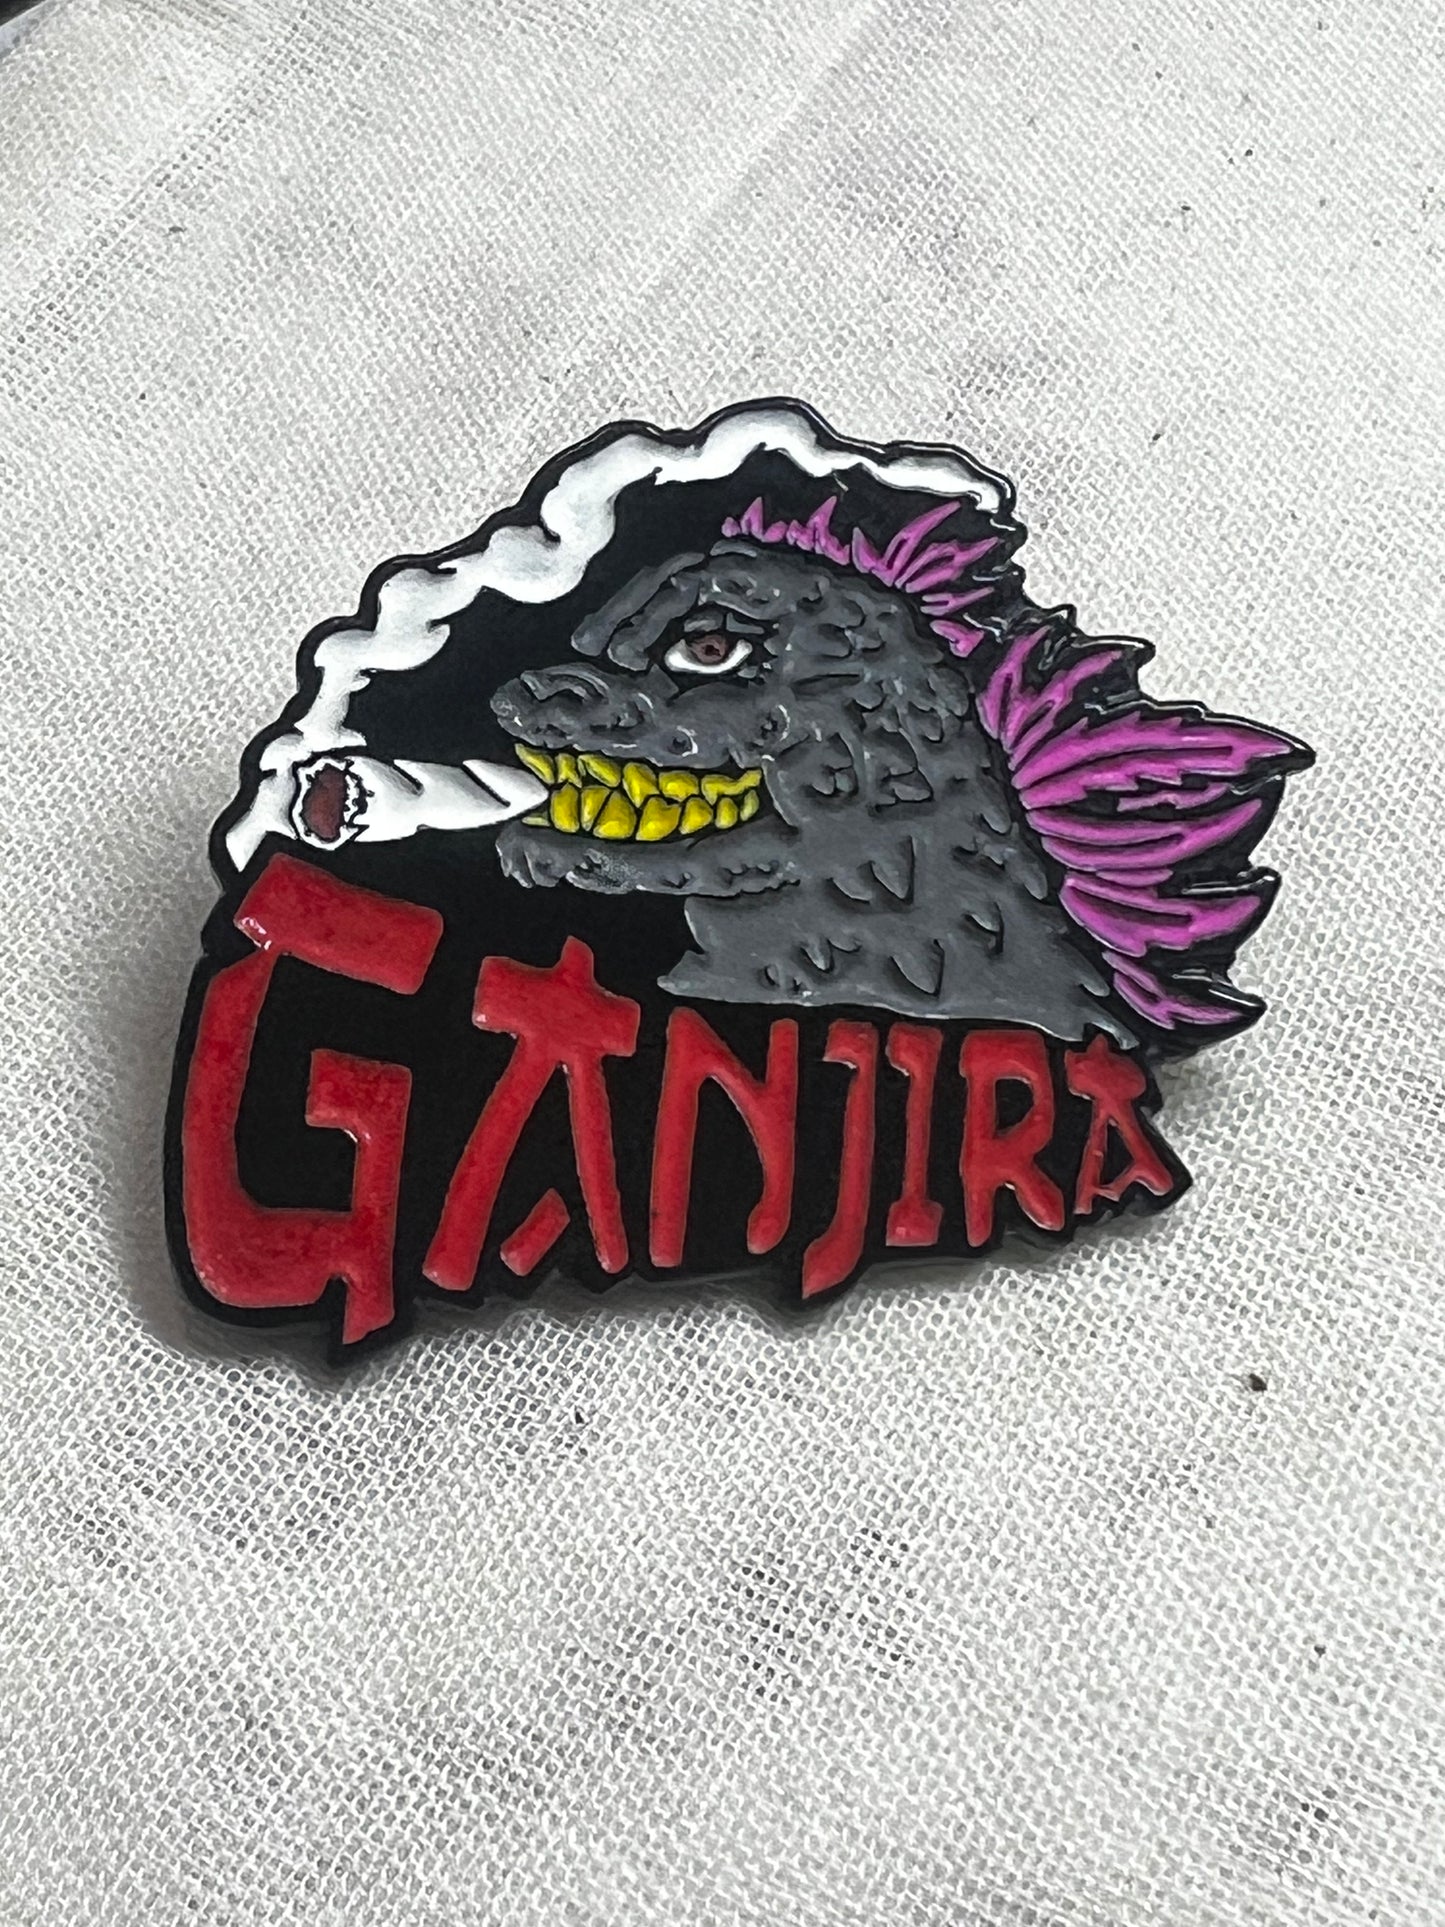 Ganjira (Movie Colorway)